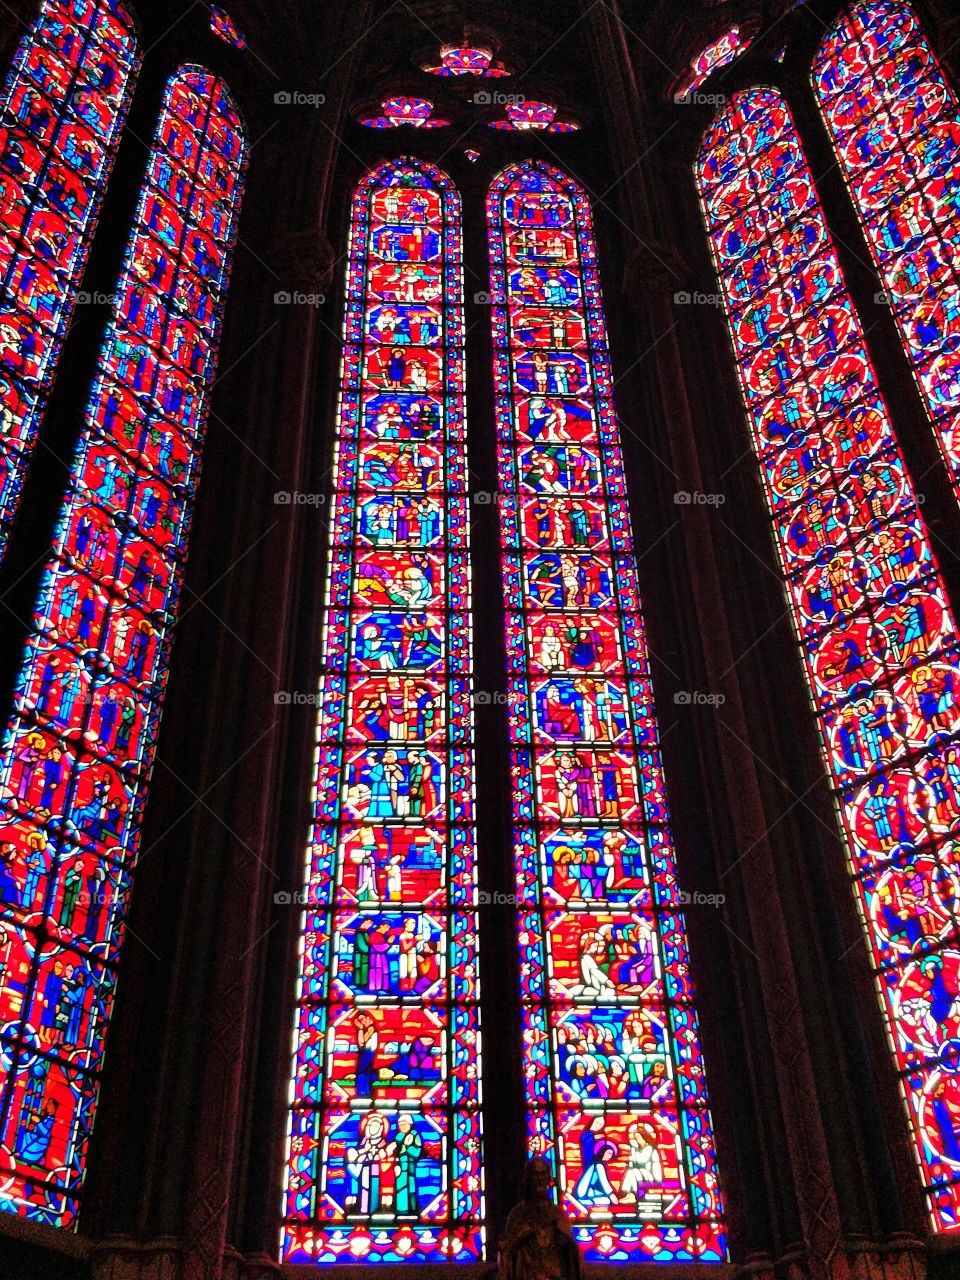 glass in church